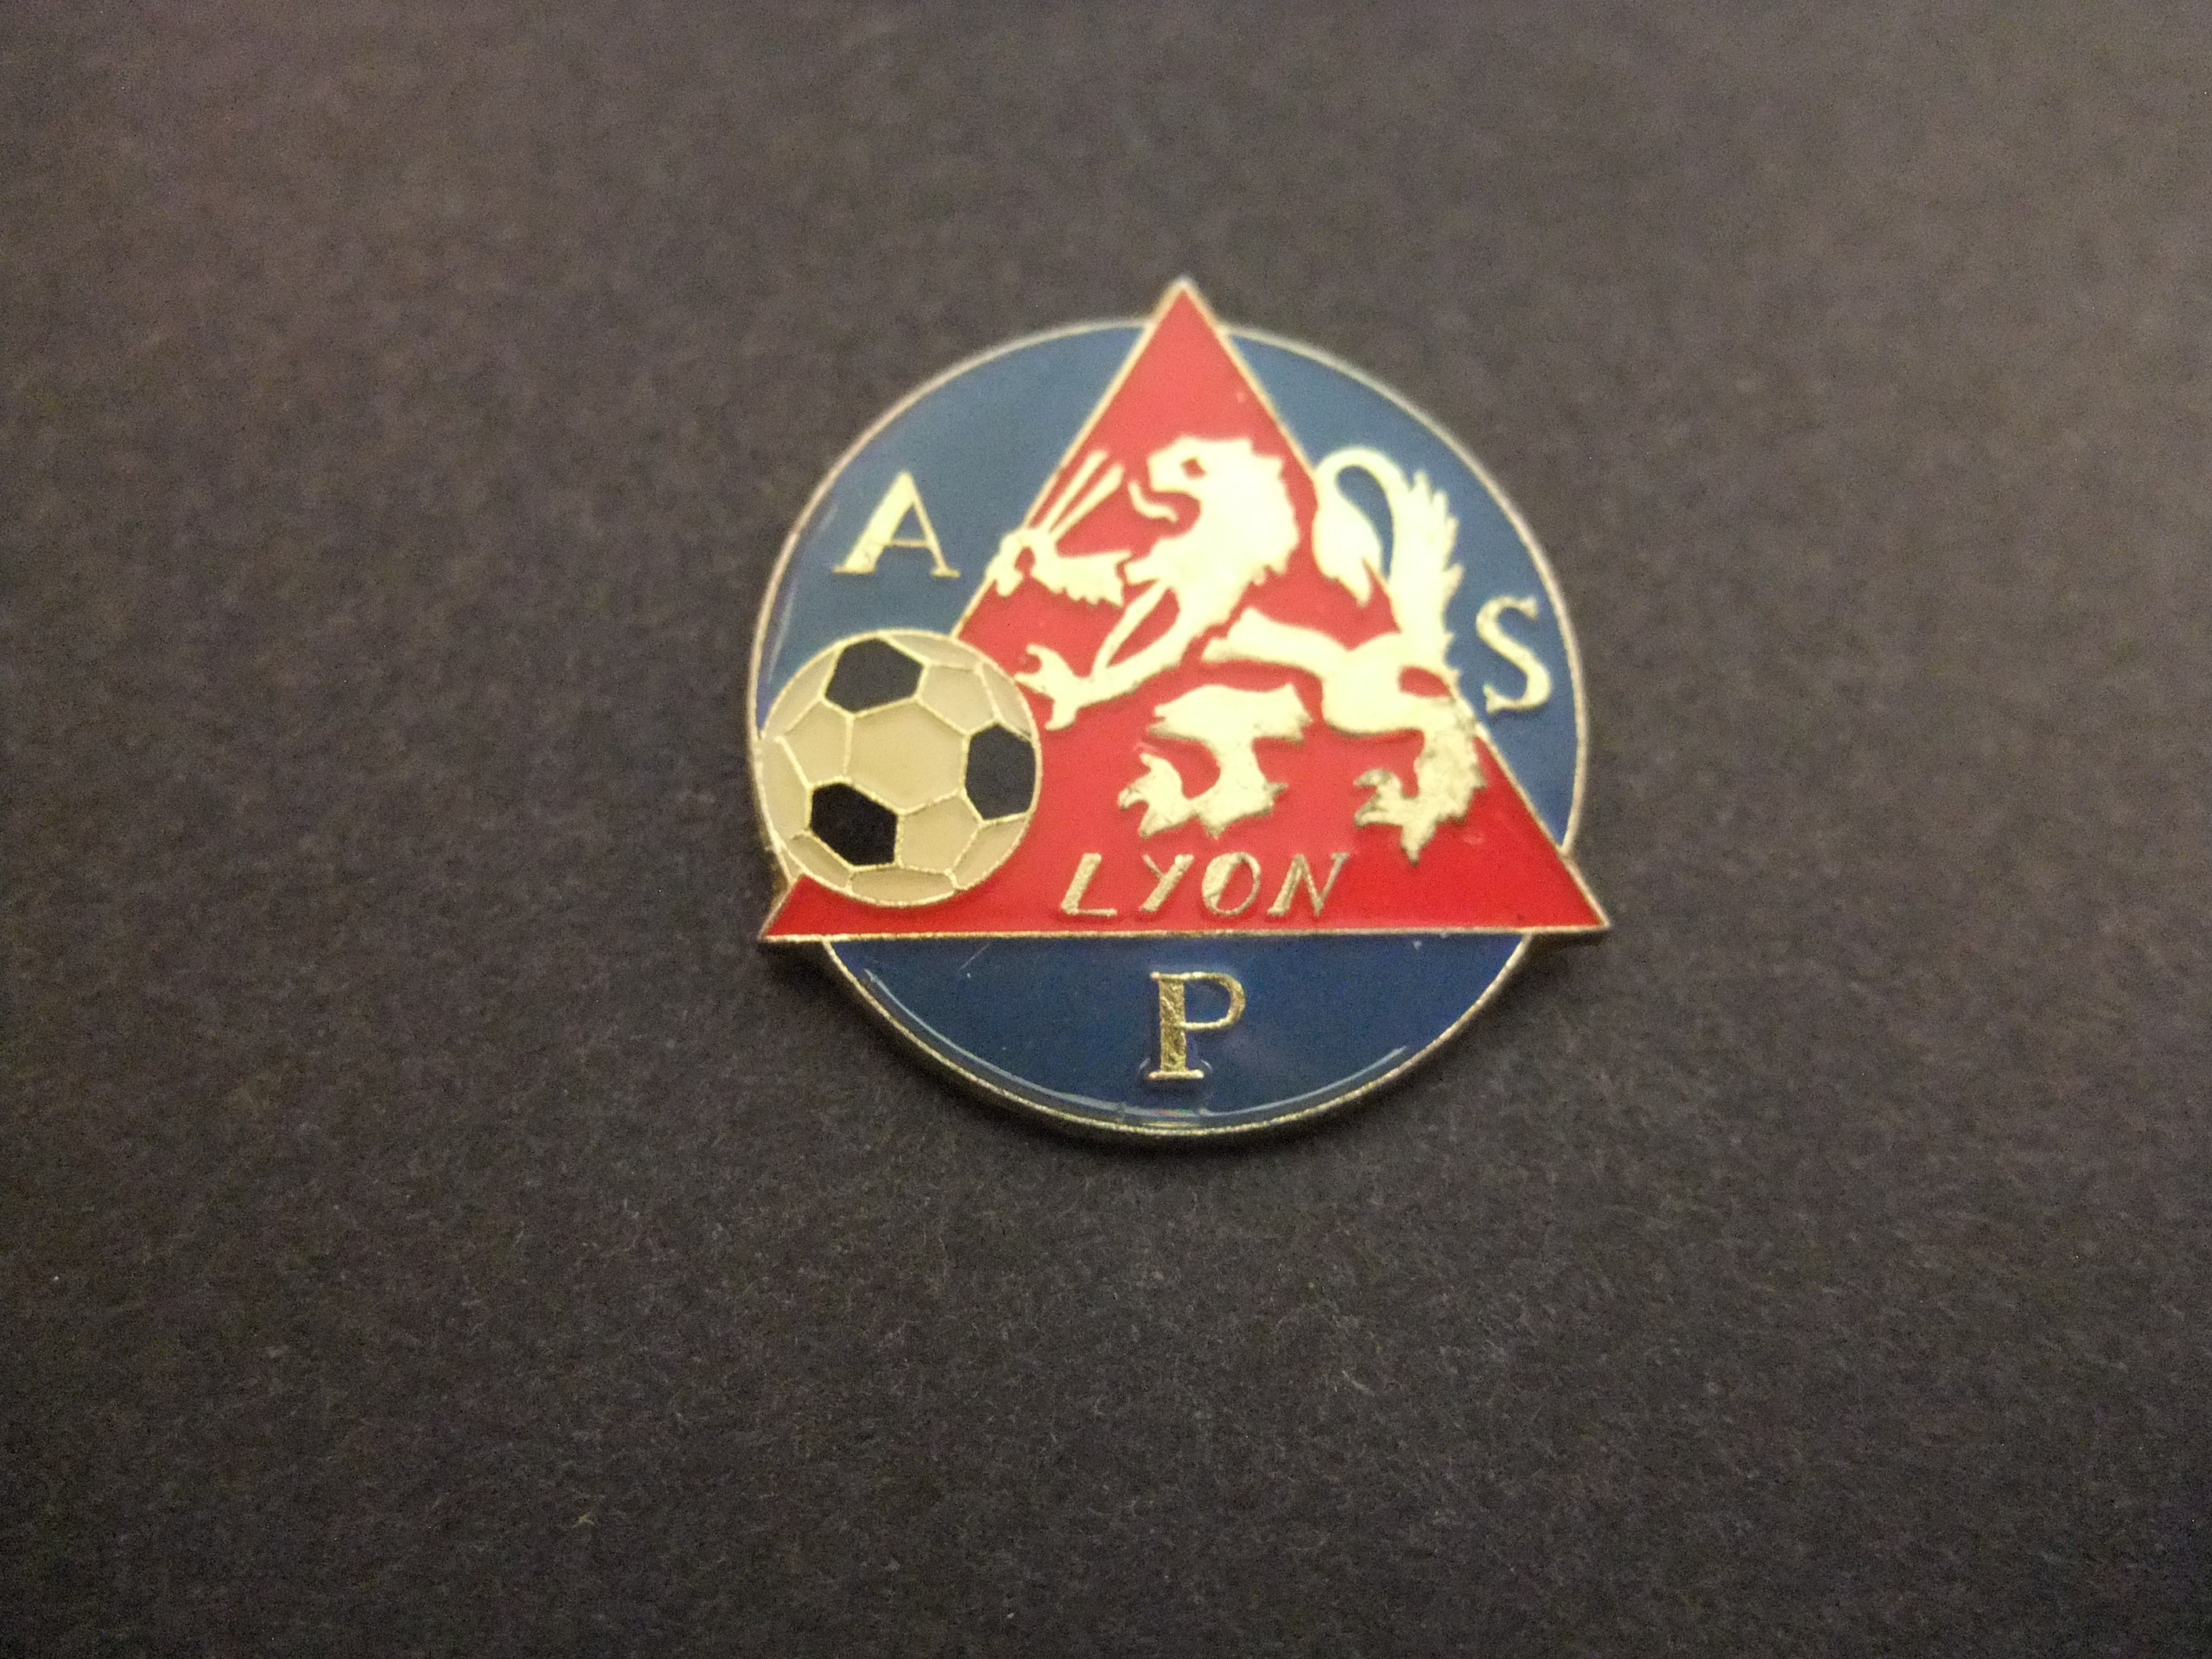 ASP Lyon Franse voetbalclub logo